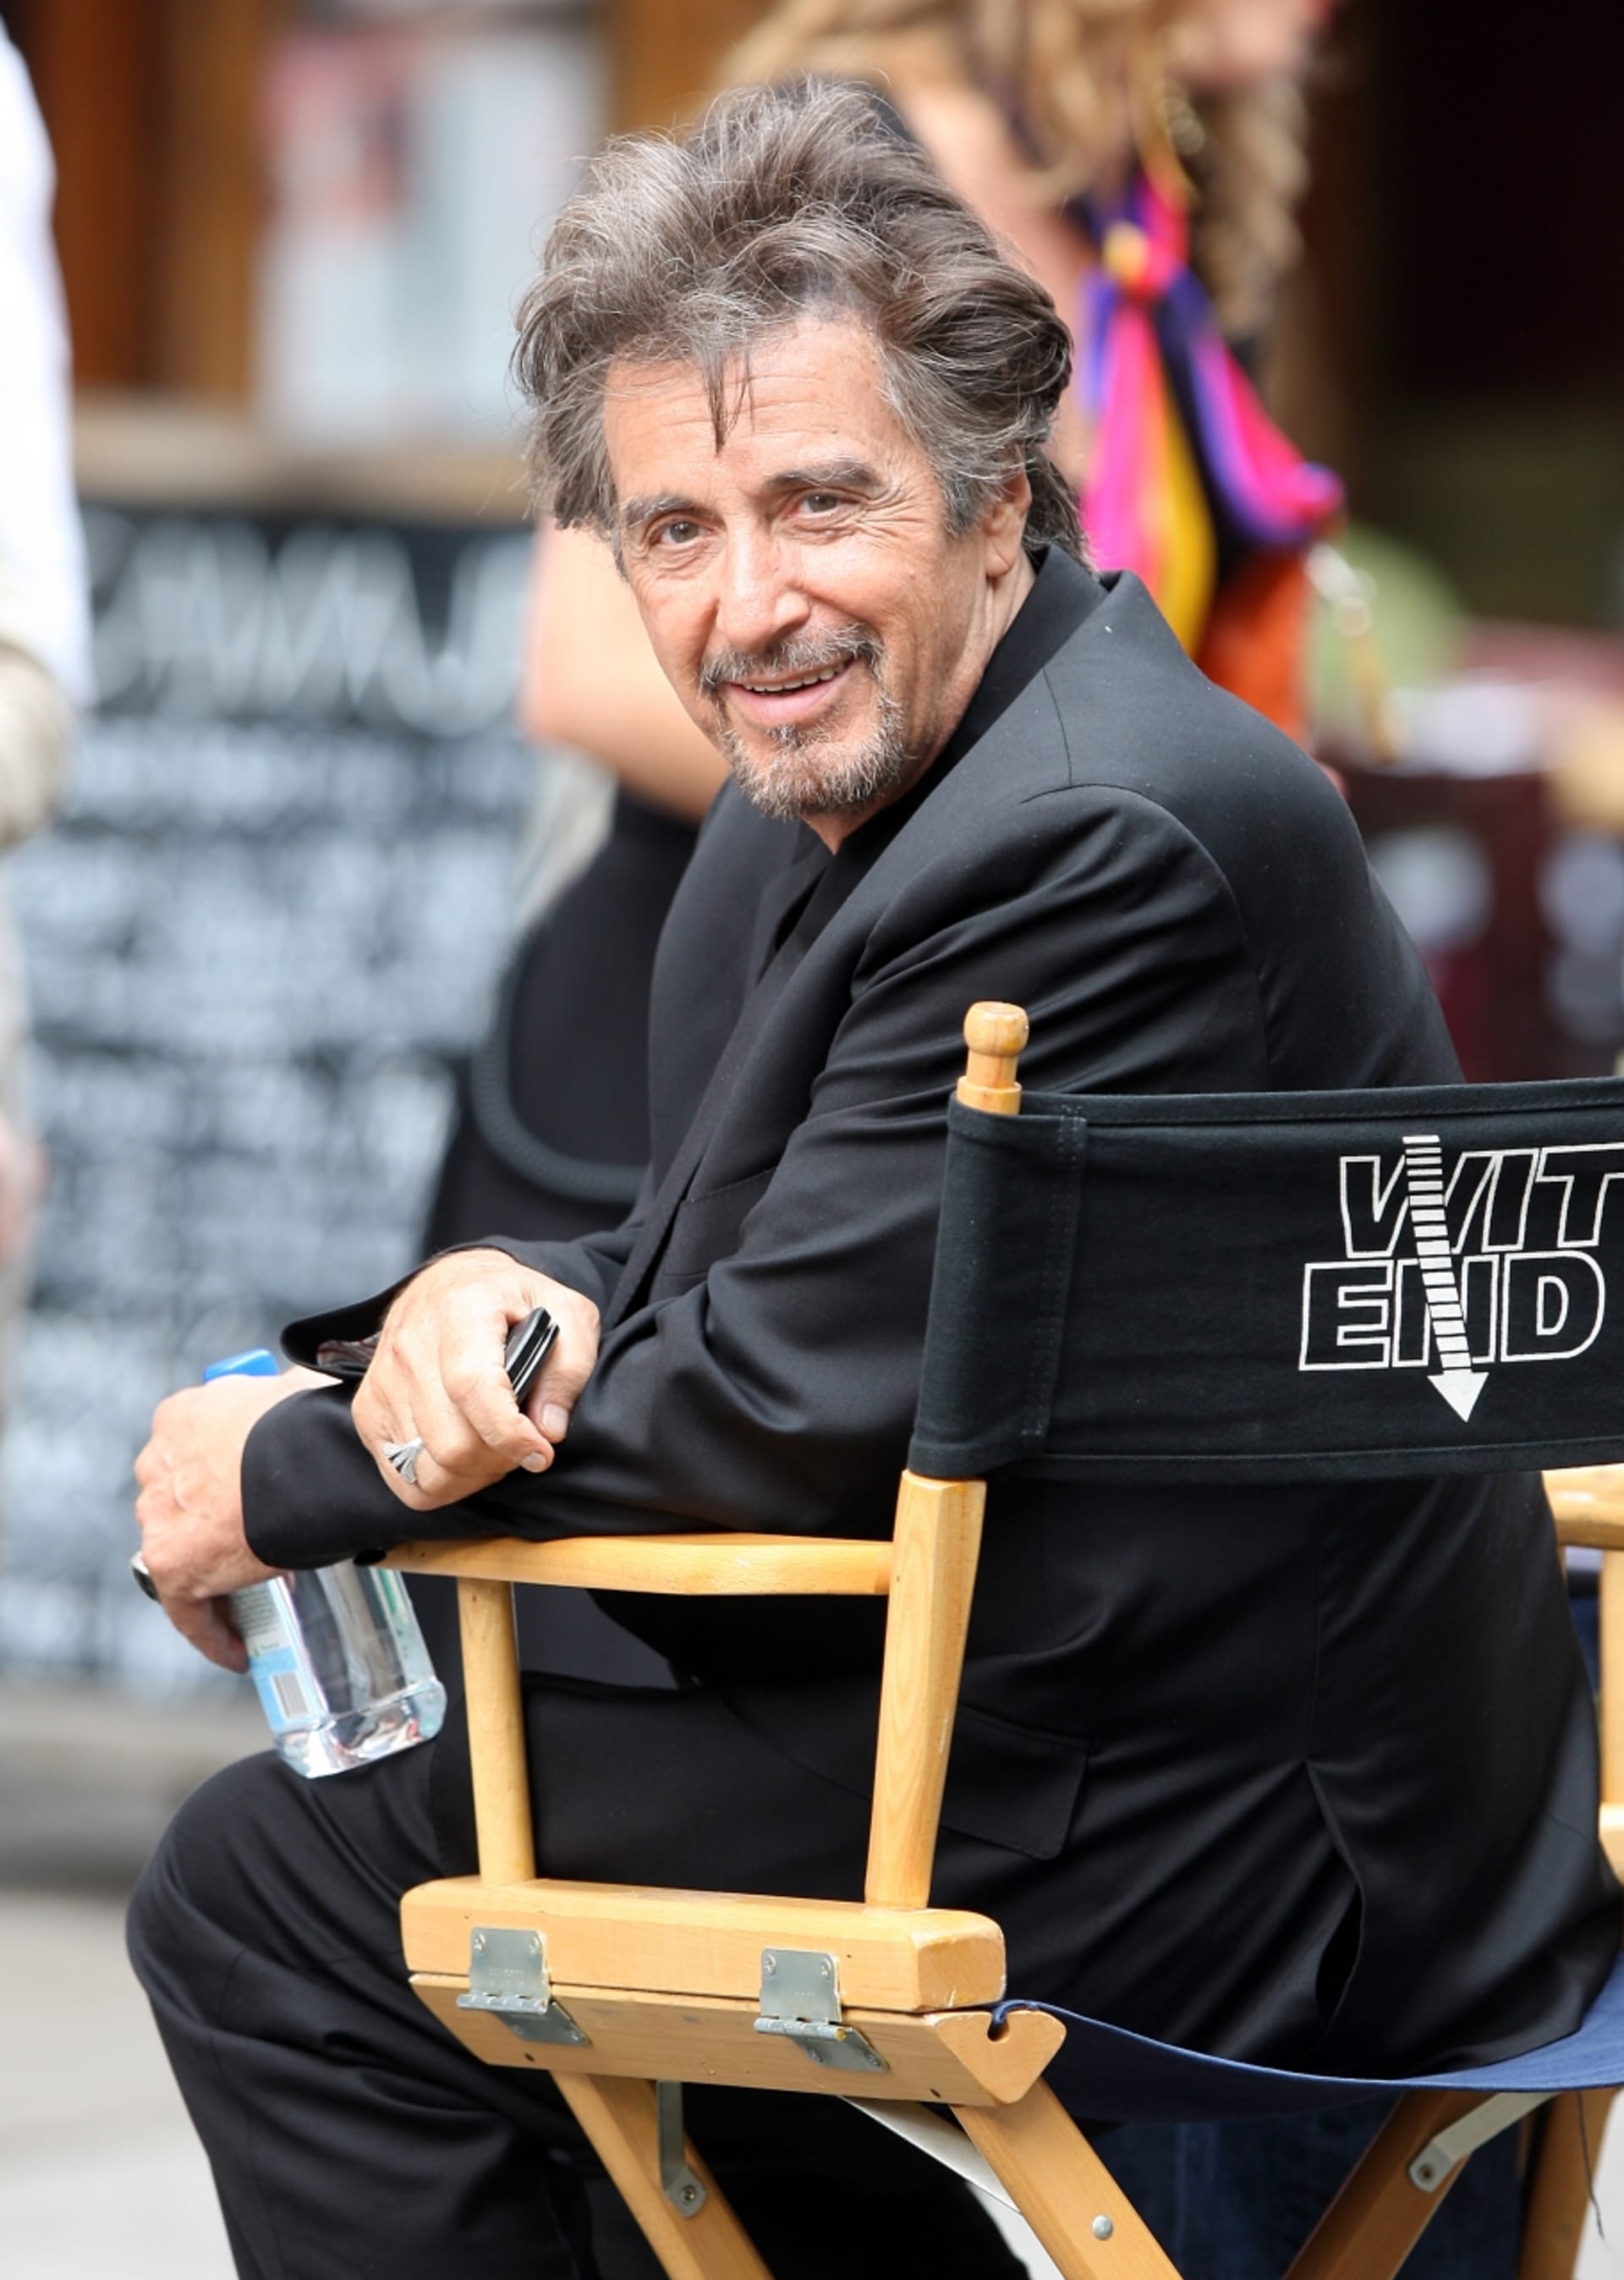 Herec Al Pacino neztrácí kouzlo ani s přibývajícími šedinami. Stále má svůj ďábelský kukuč.